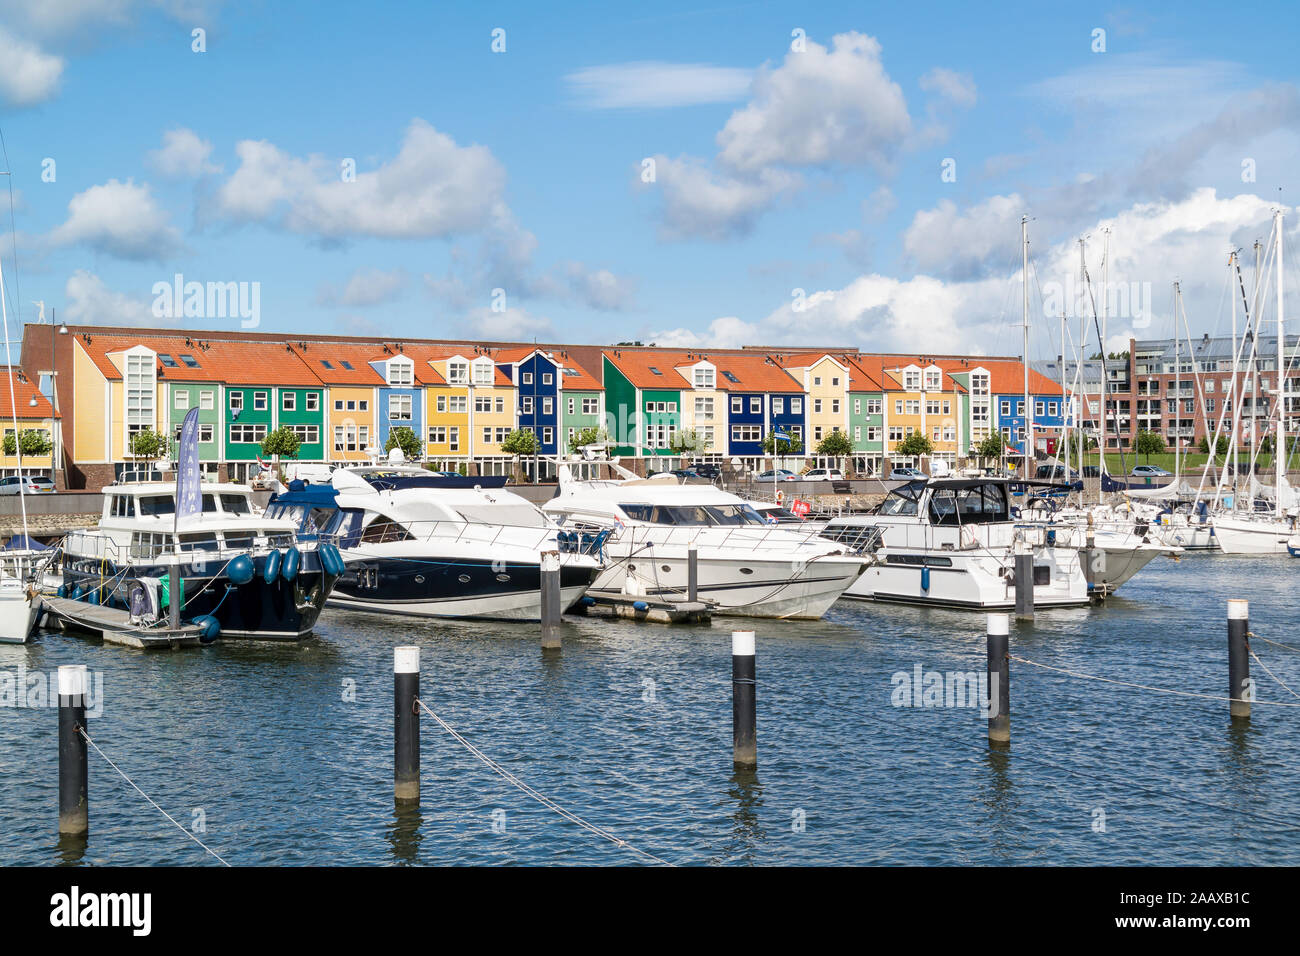 Coloridas fachadas de casas y yates a motor en marina Hellevoetsluis, Holanda Foto de stock